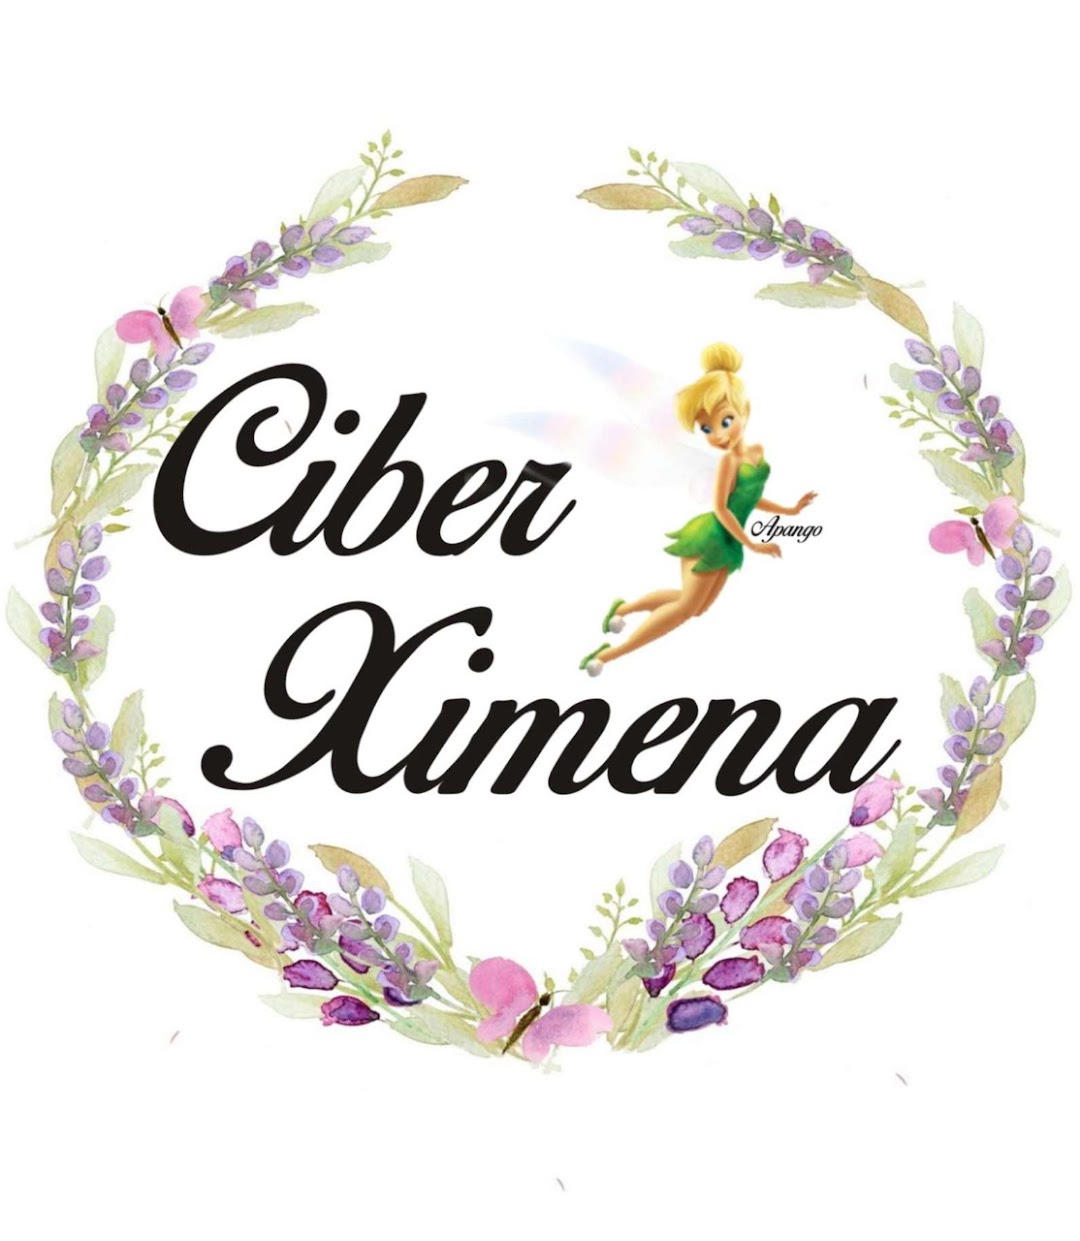 Ciber Ximena